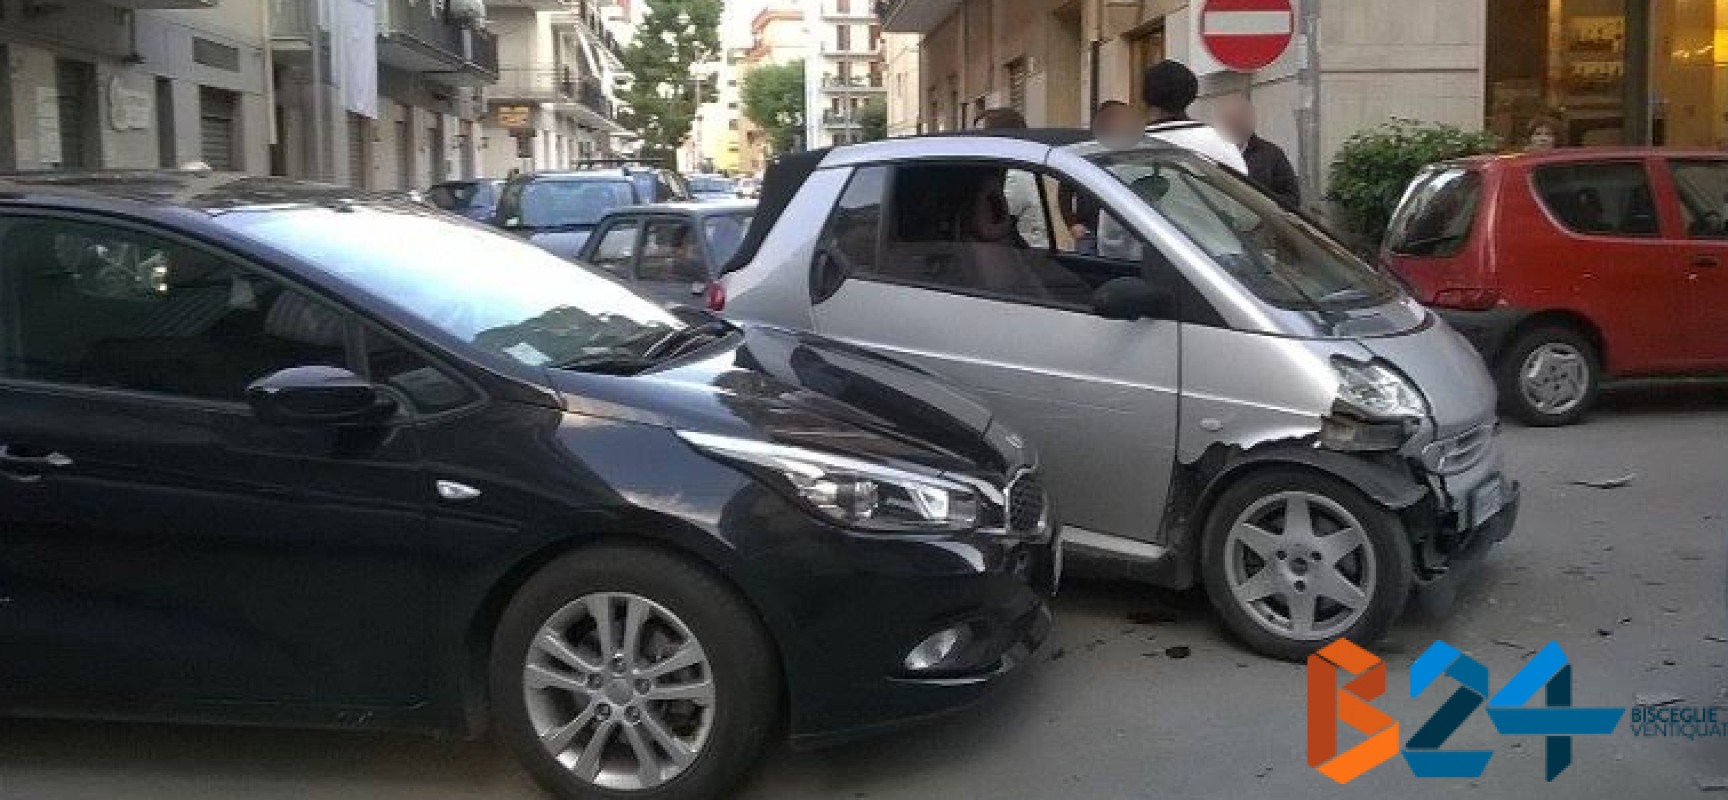 Incidente su via Monterisi / via Croce, ingenti danni alle auto e animi accesi tra i conducenti / FOTO